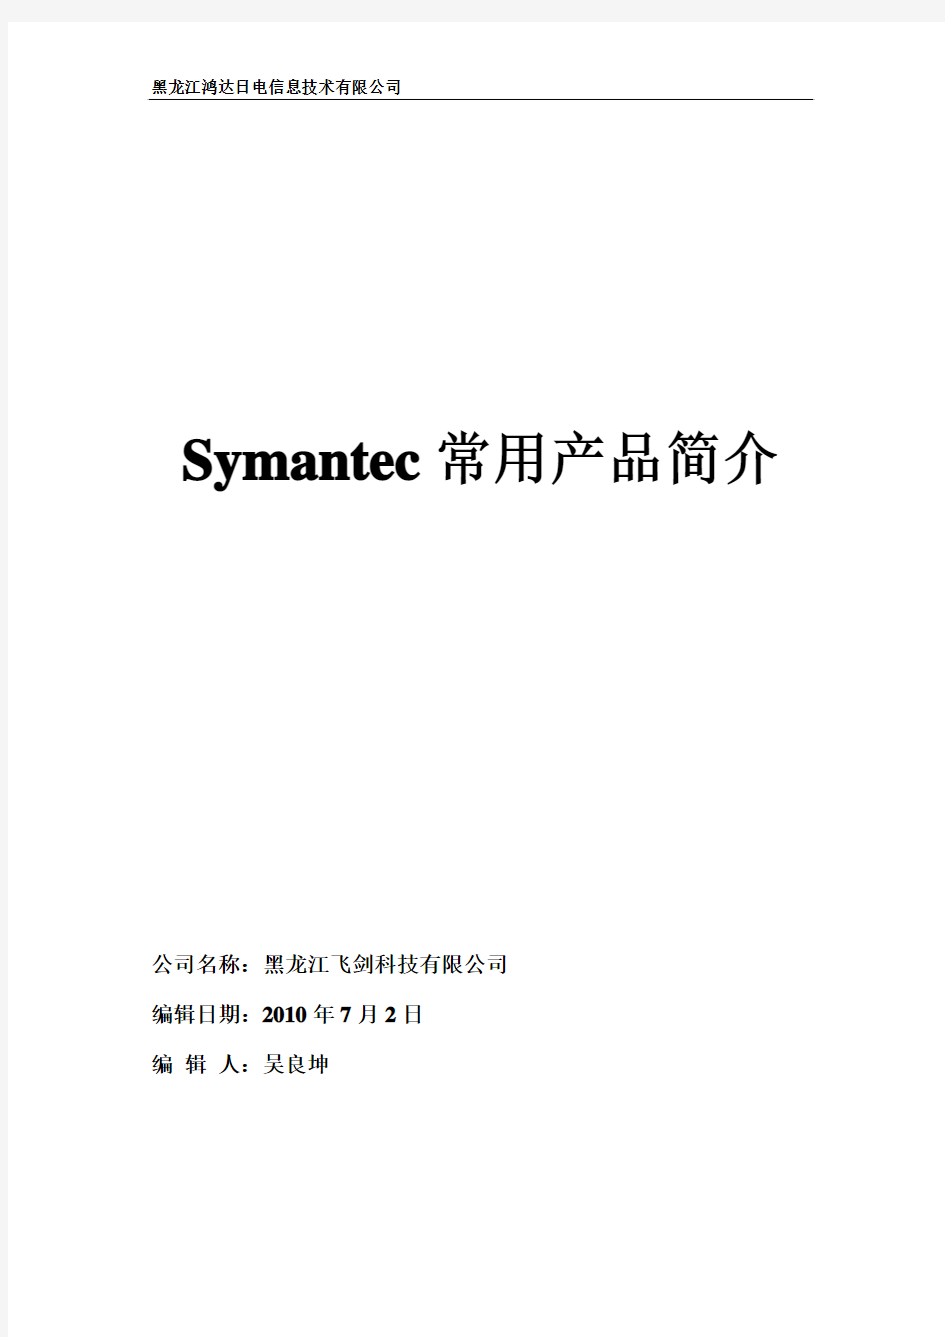 Symantec常用产品简介